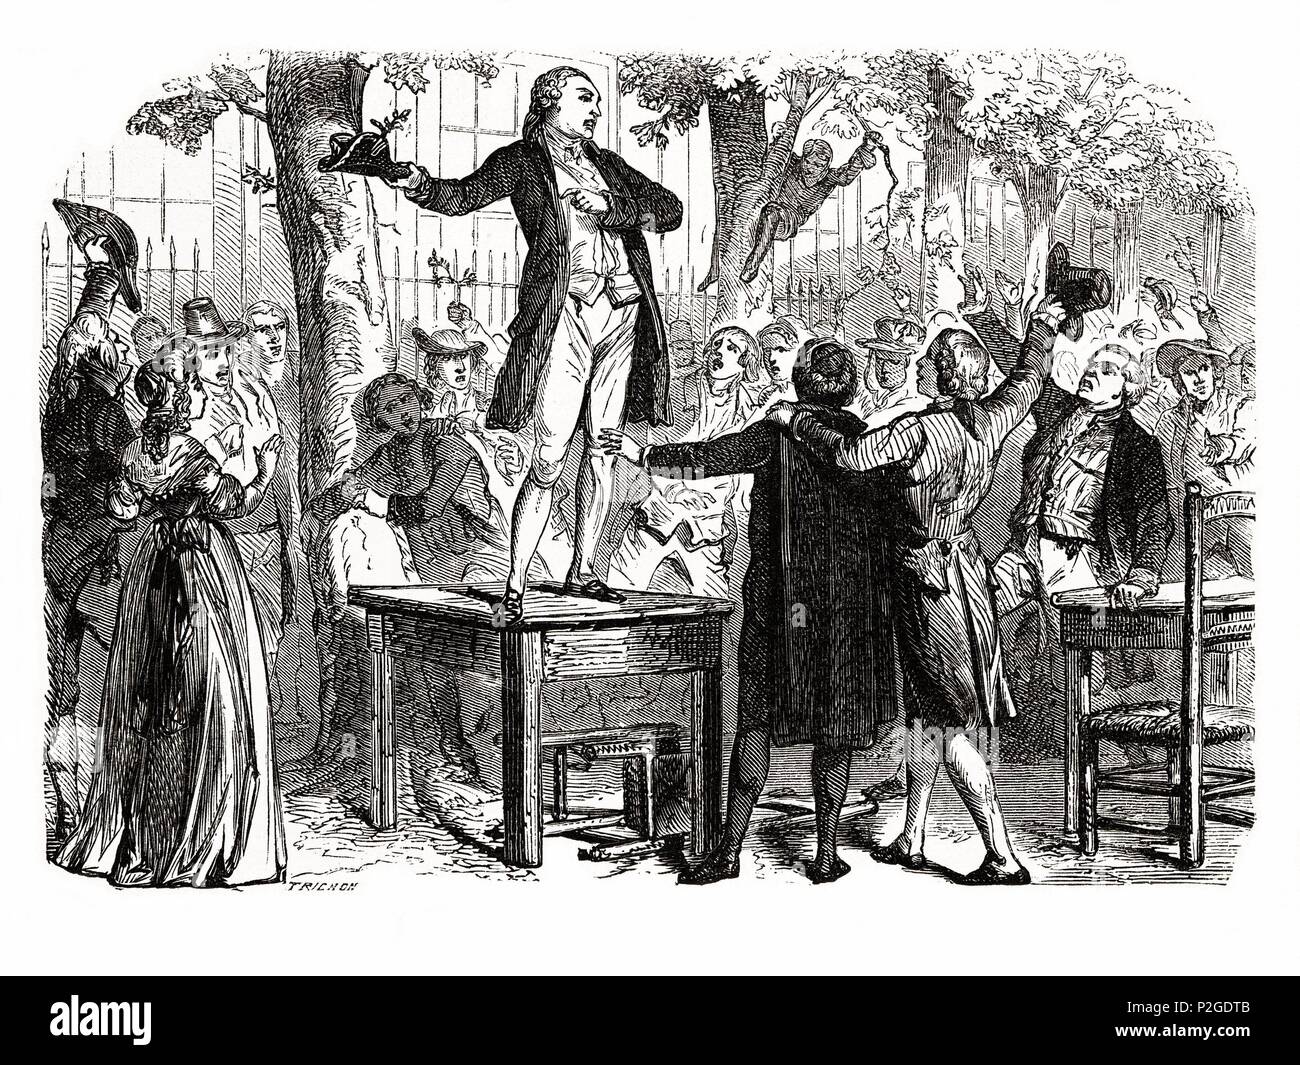 Camille Desmoulins (1760-1794). Publicista y político francés. Compañero de Robespierre, publicó folletos de gran elocuencia acusando al Antiguo Régimen. Muerto el 13 de abril de 1794, ejecutado por el tribunal revolucionario. Grabado de 1866. Stock Photo